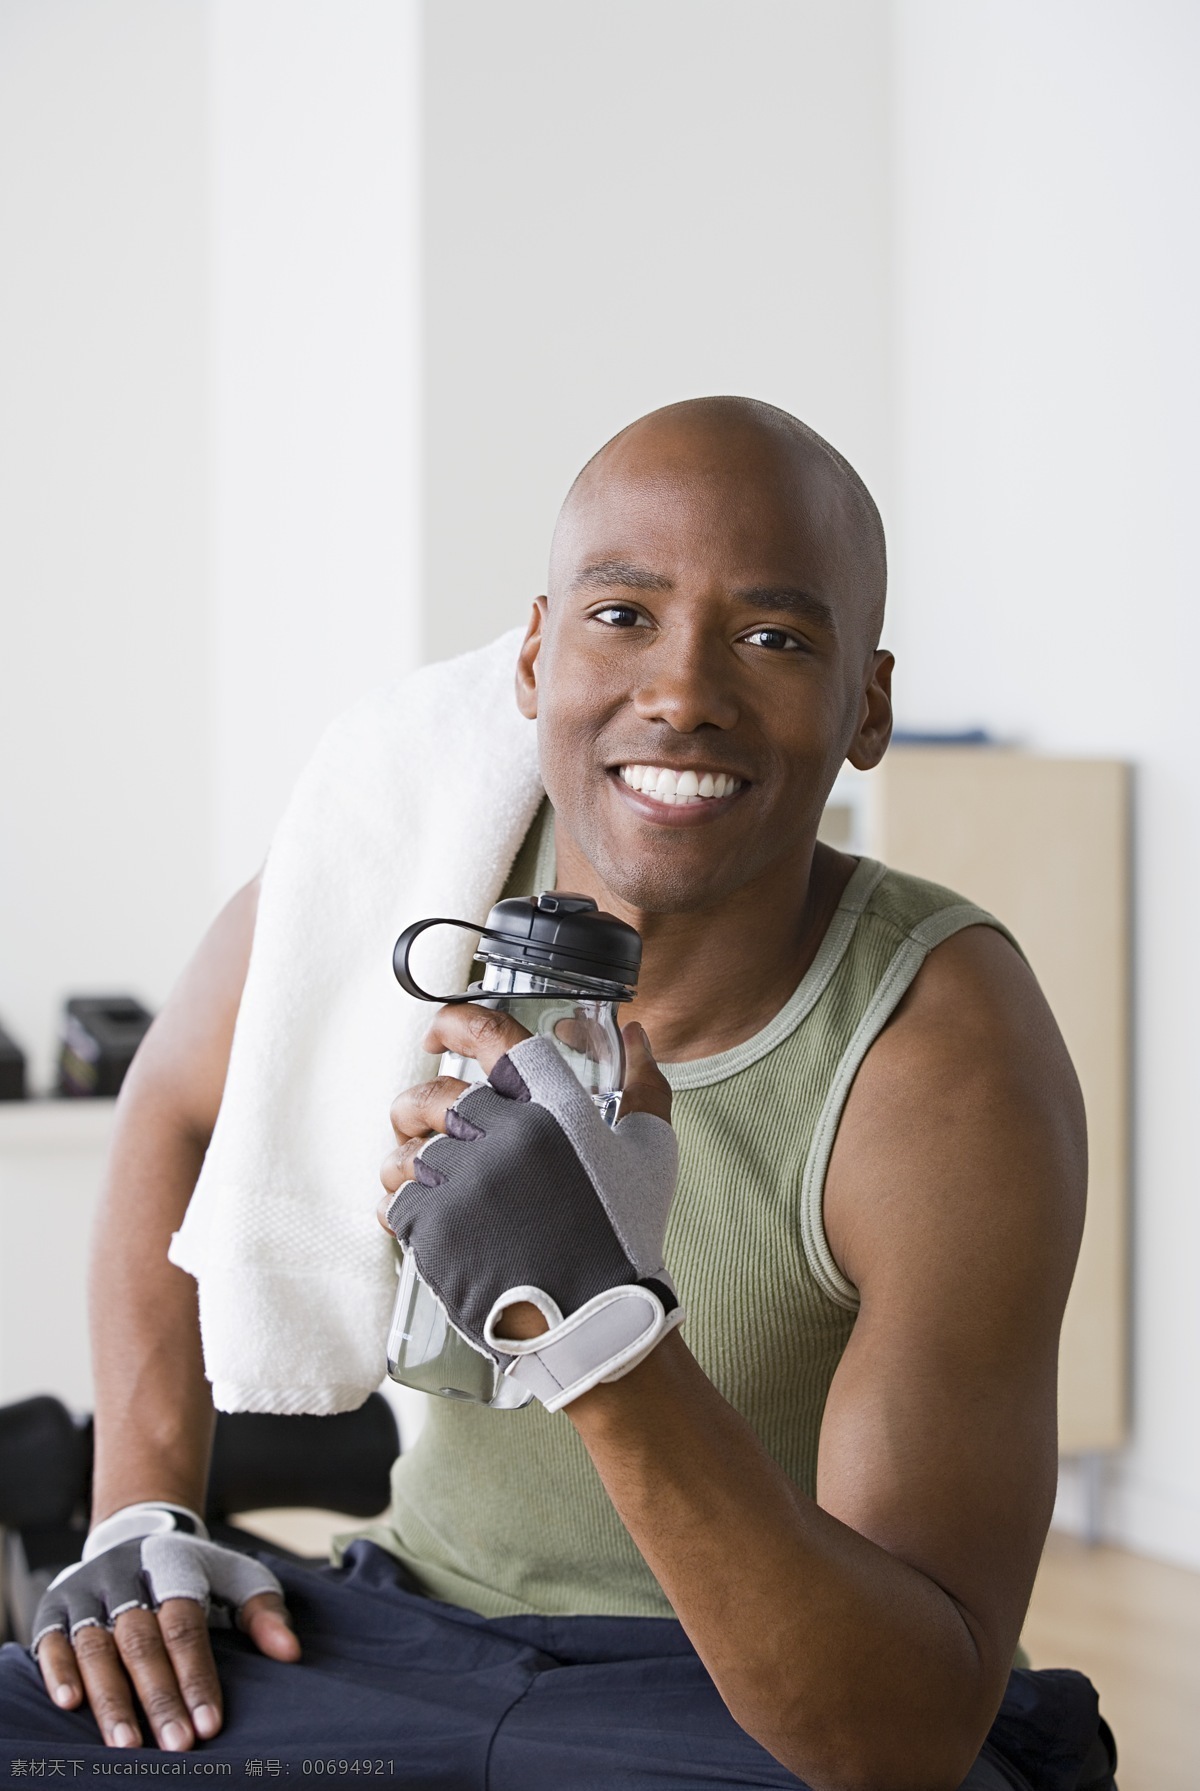 补充 水分 健身 男性 健身男性 外国男性 健身房 锻炼 生活人物 人物图片